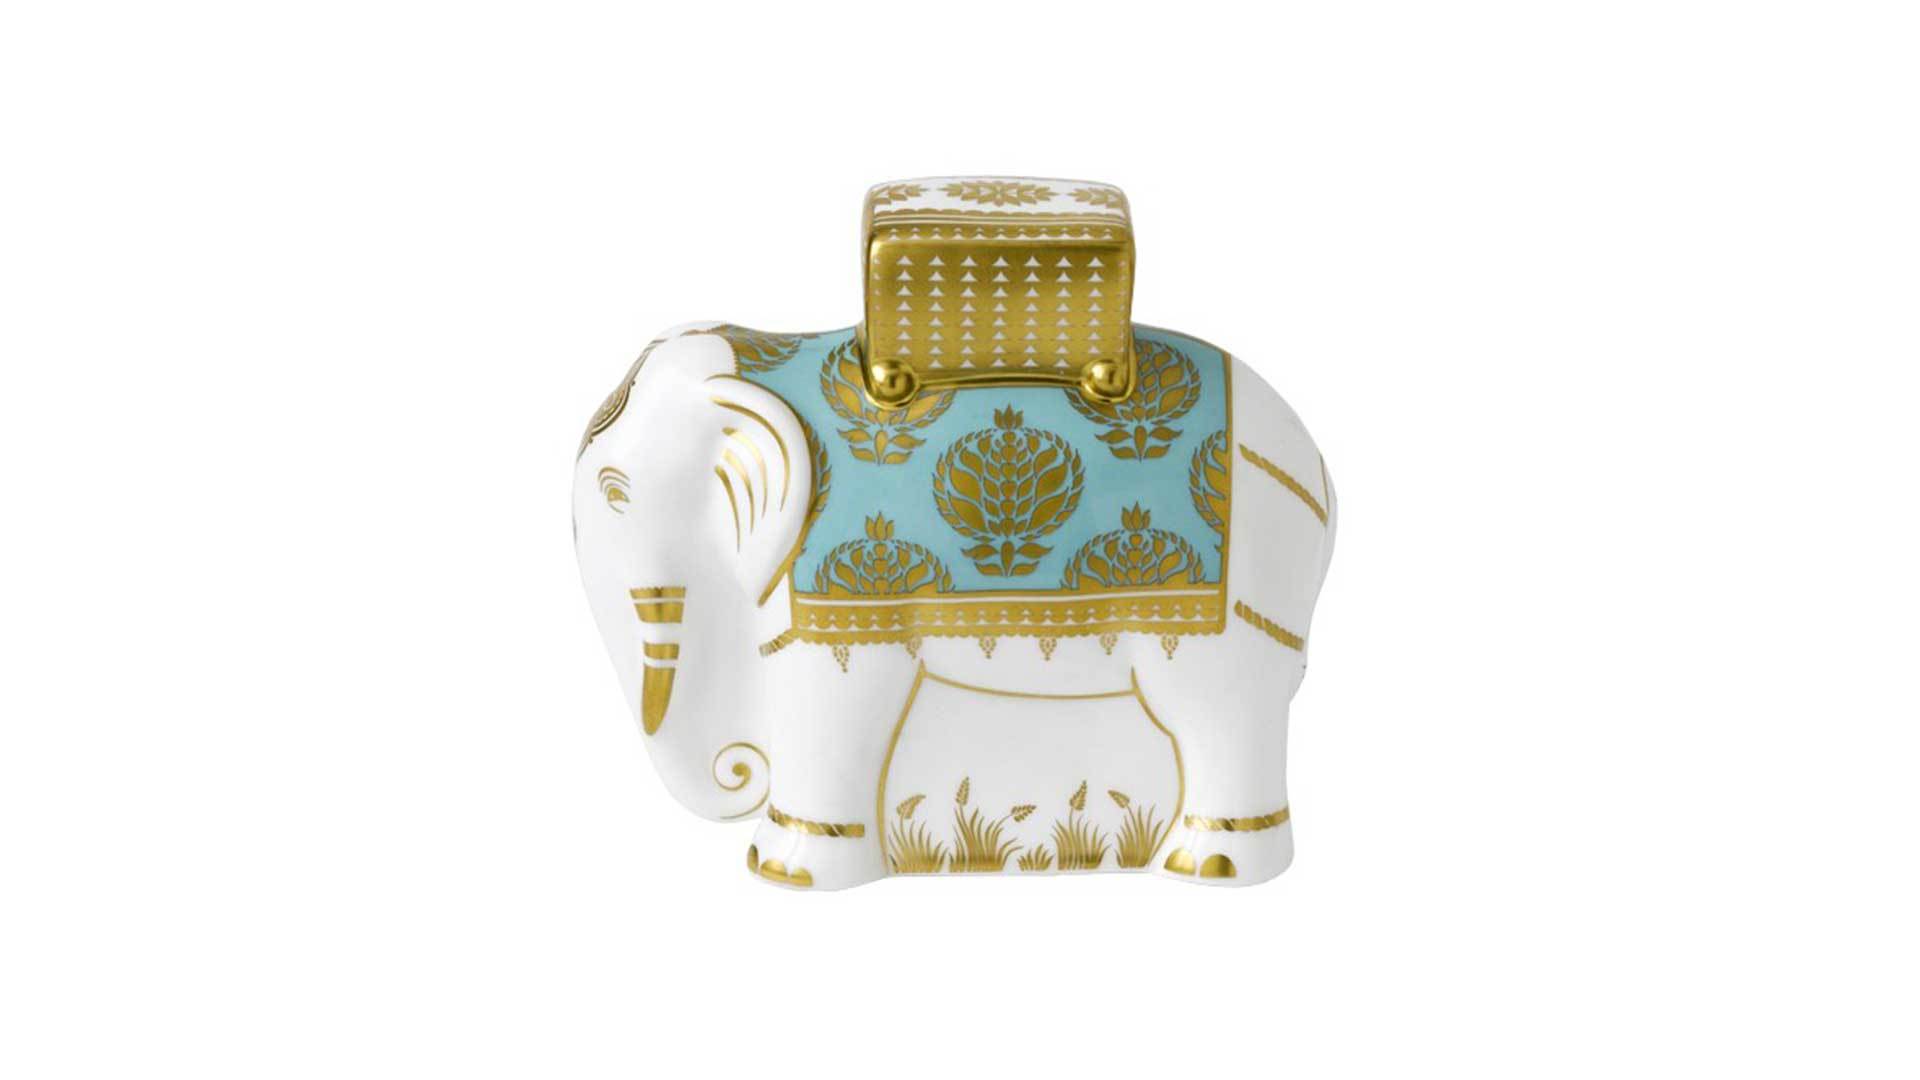 Пресс-папье Royal Crown Derby Слон 15 см, Бристоль бель